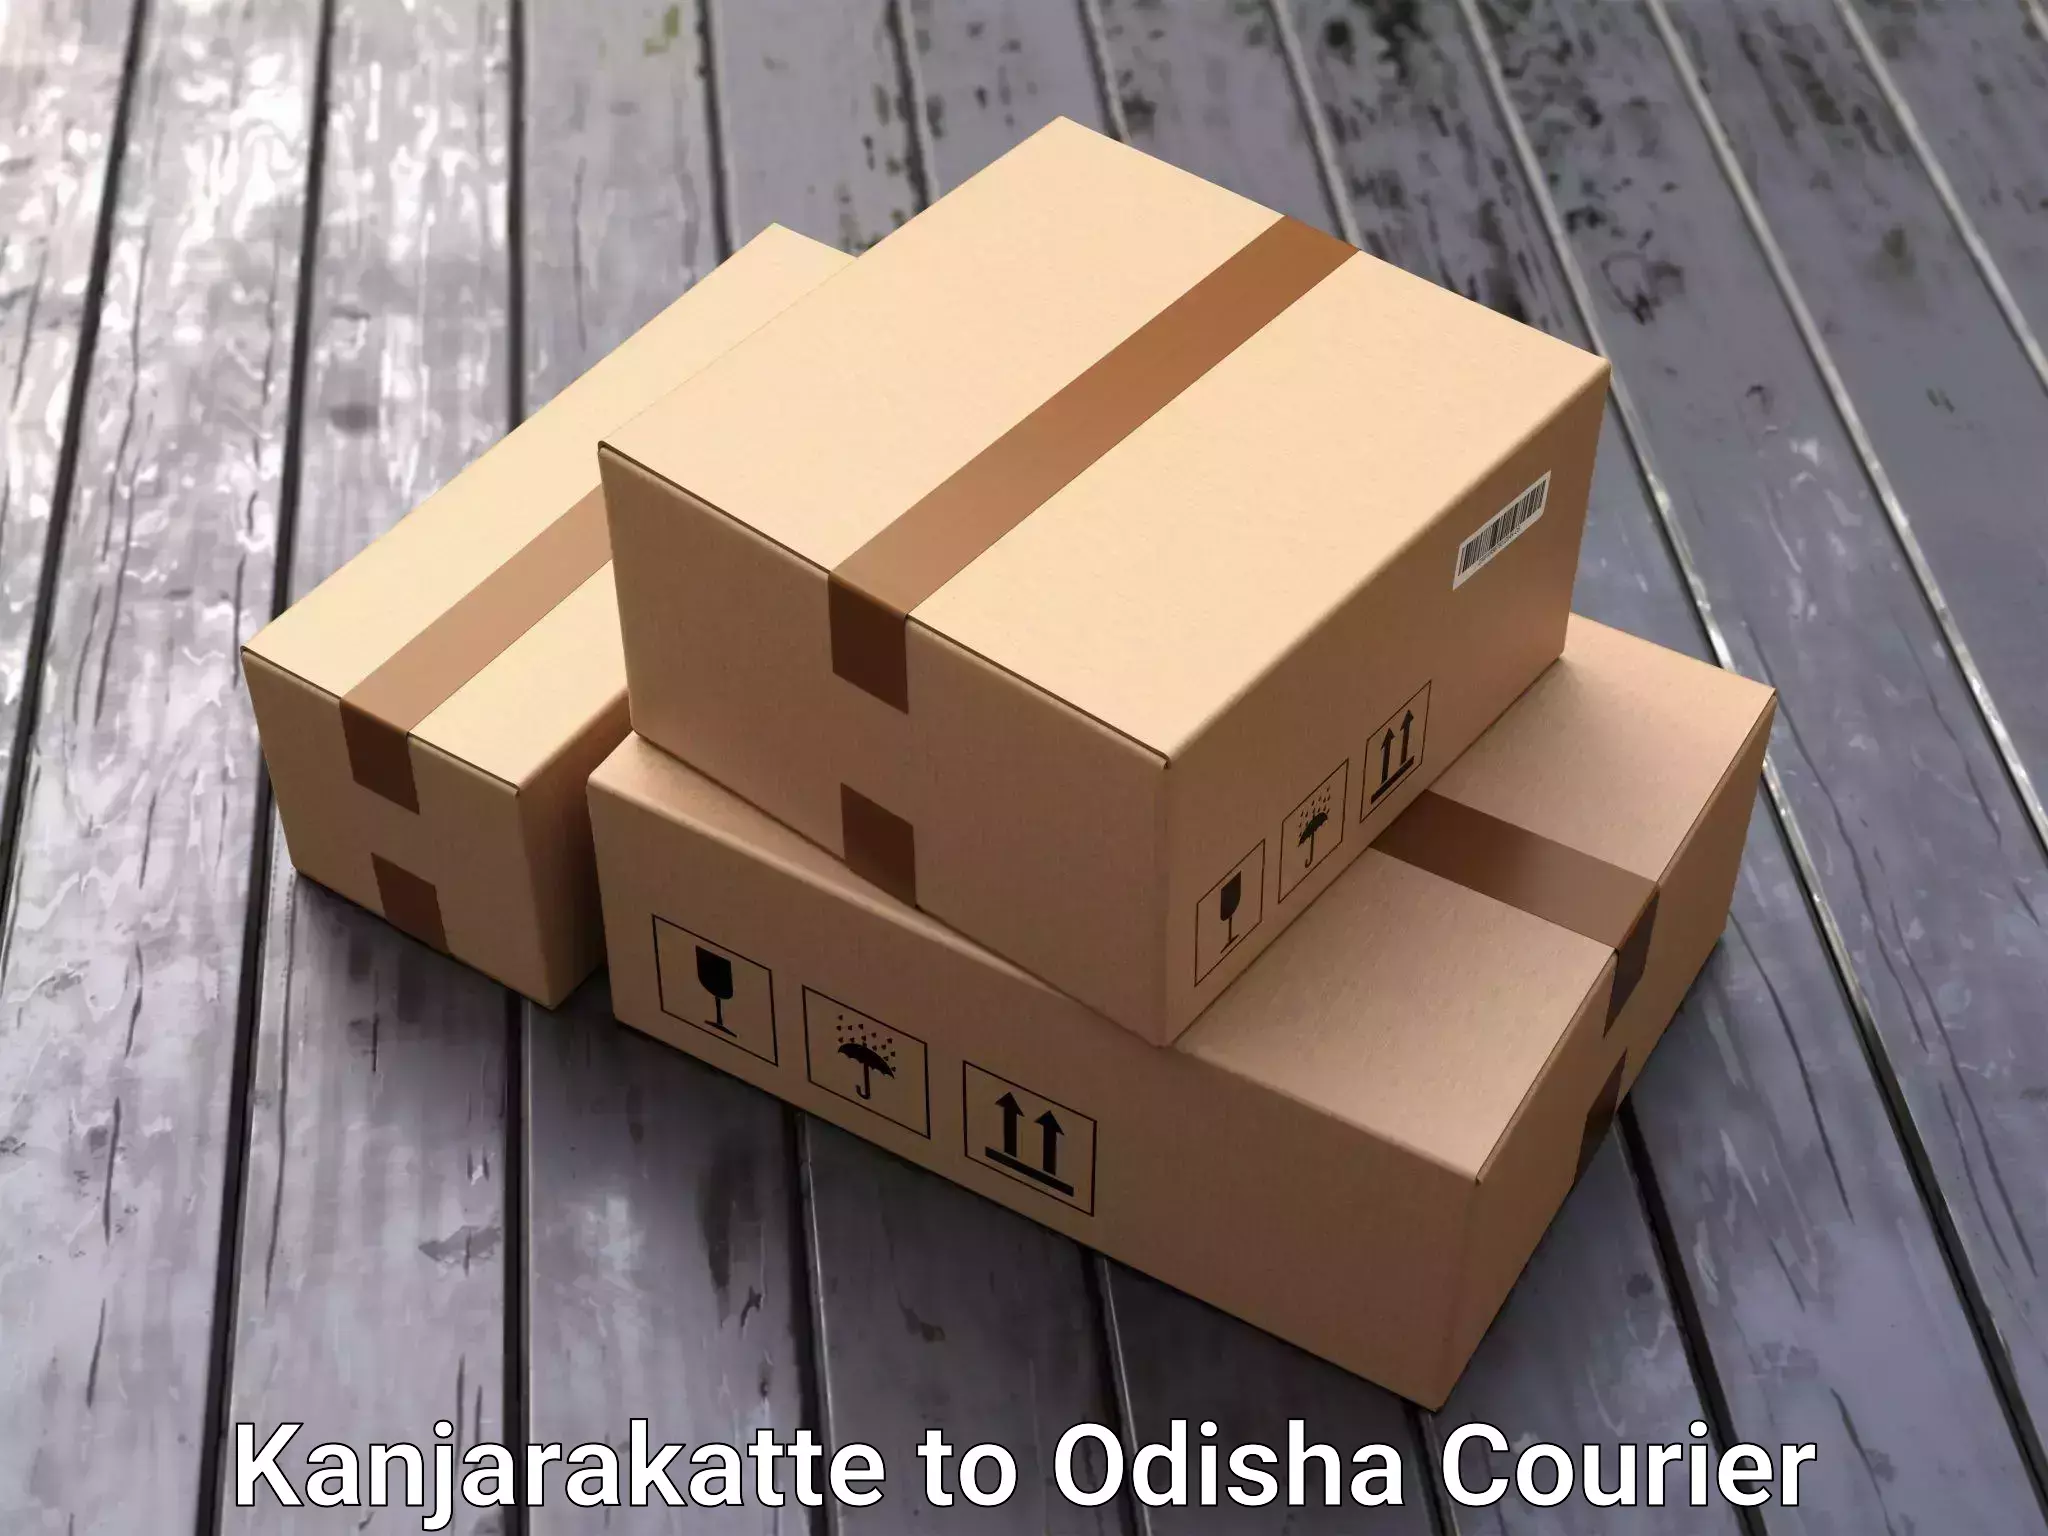 Trusted moving company Kanjarakatte to Kosagumuda